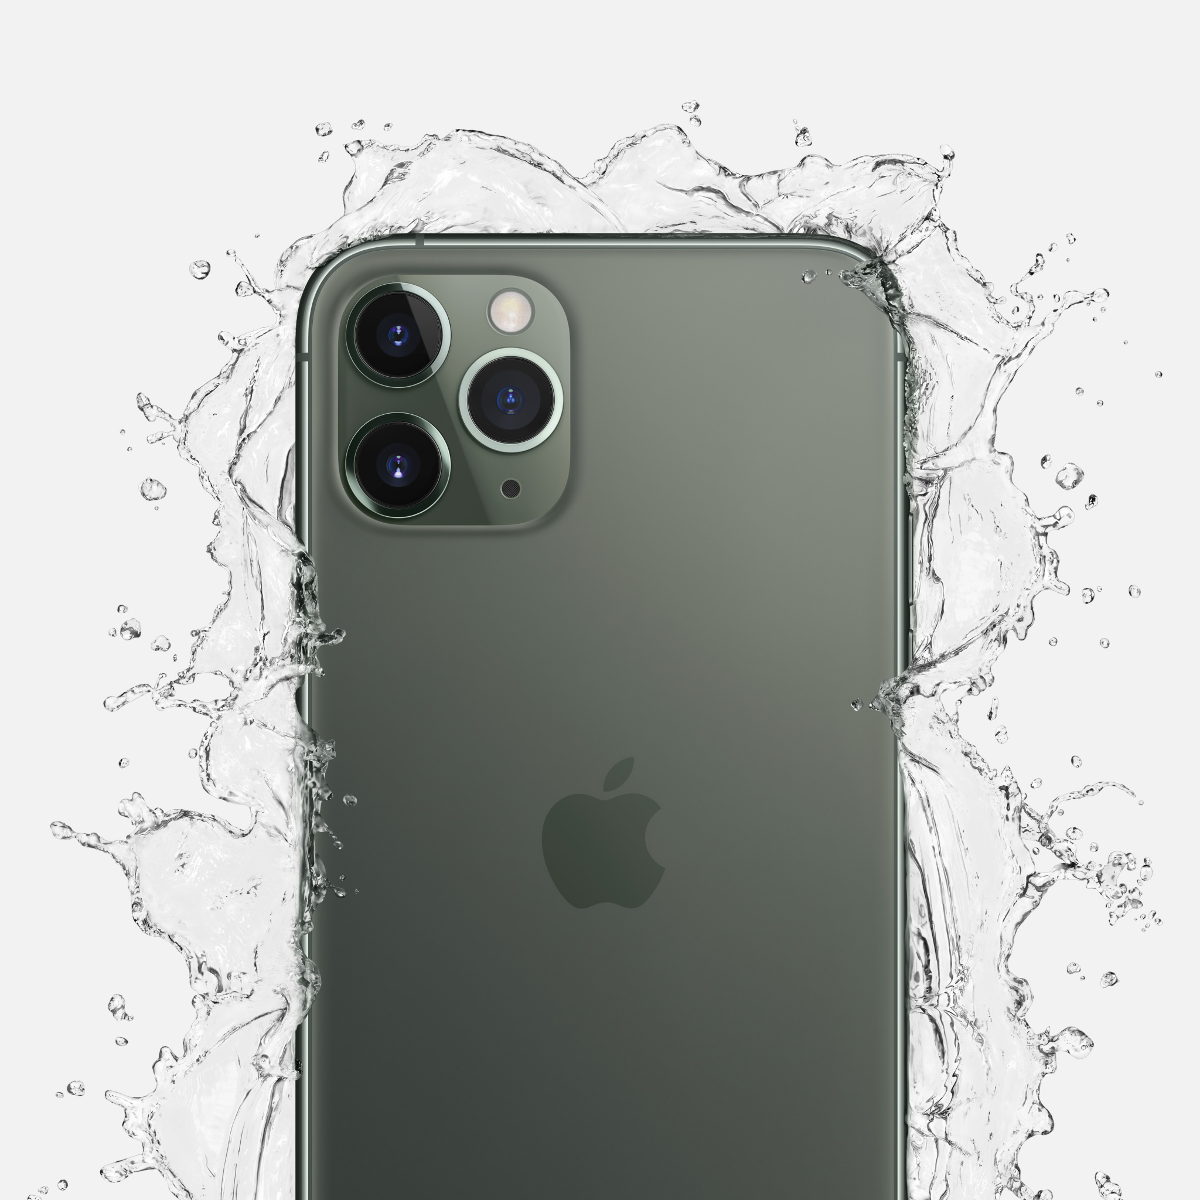 Смартфон Apple iPhone 11 Pro 256GB в Москве, цена 89,990.00 руб